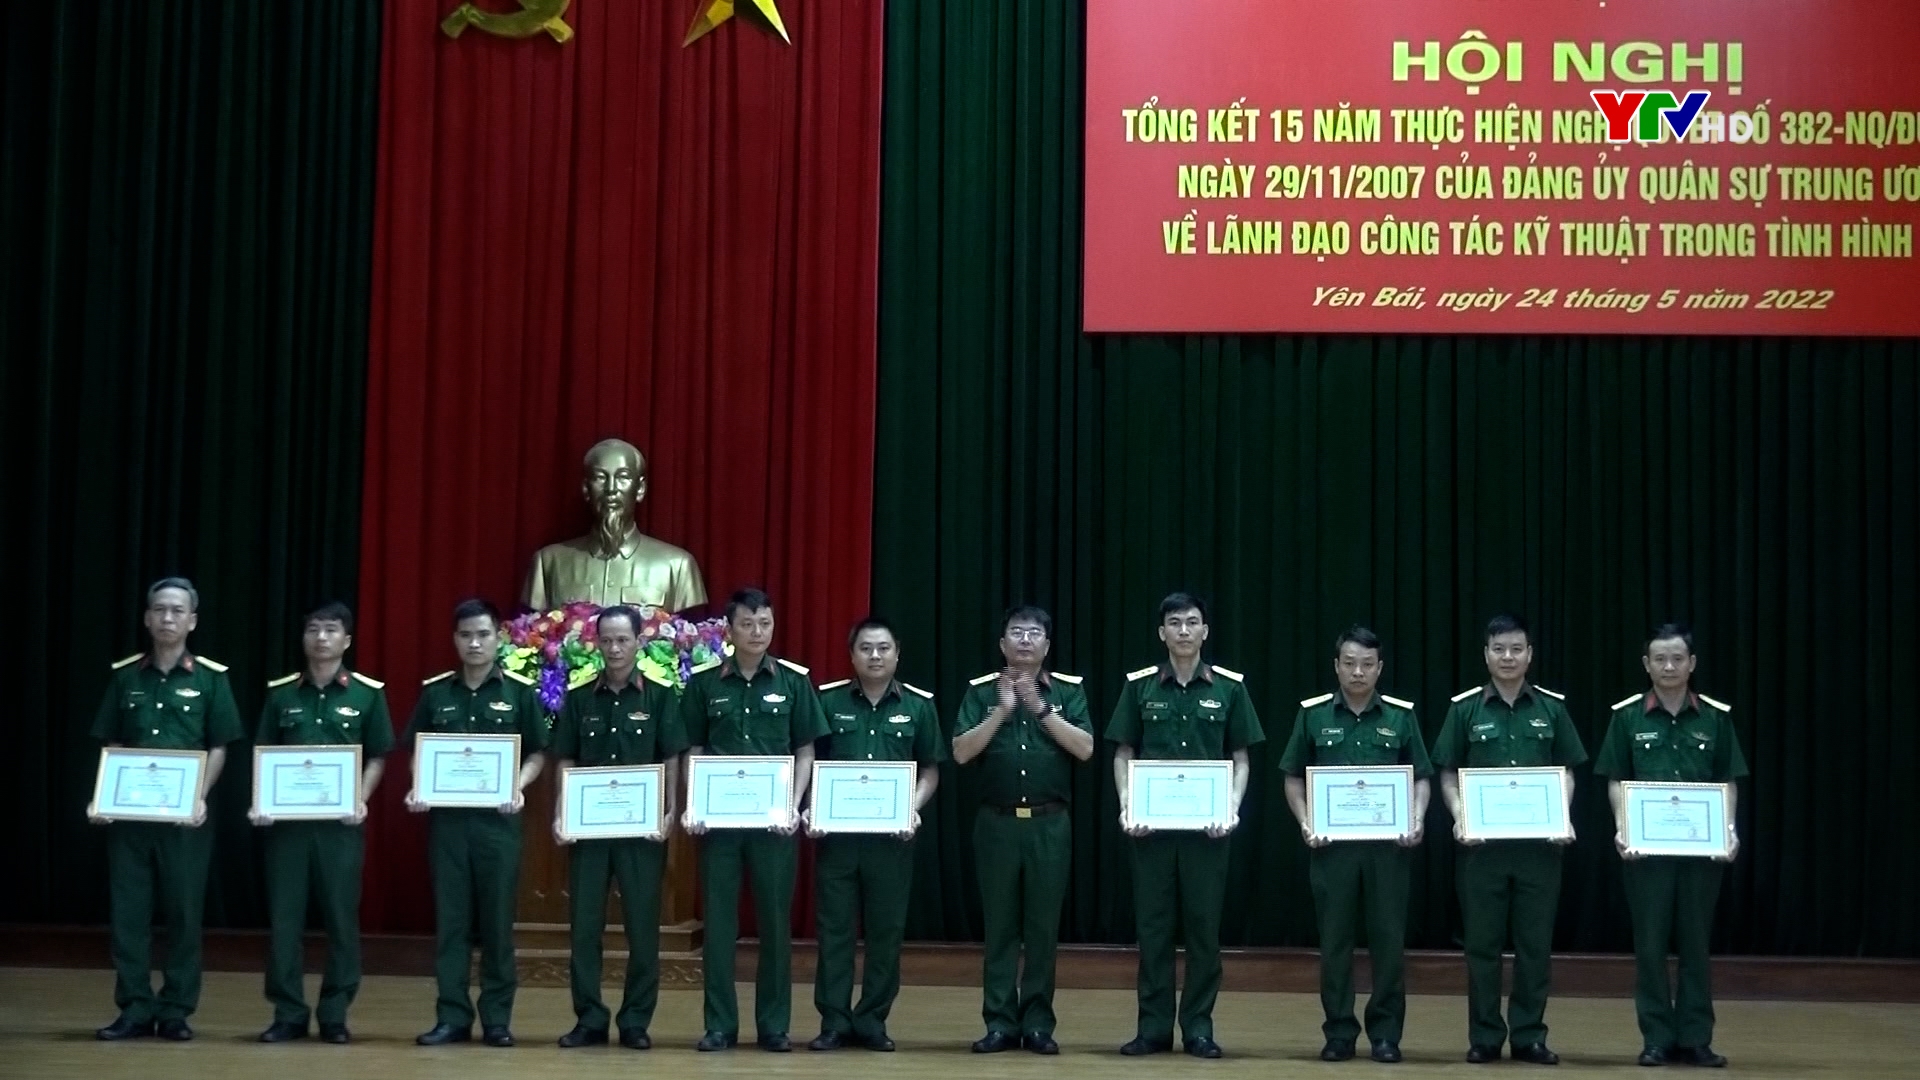 Đảng ủy Quân sự tỉnh tổng kết 15 năm thực hiện Nghị quyết 382 của Quân ủy Trung ương